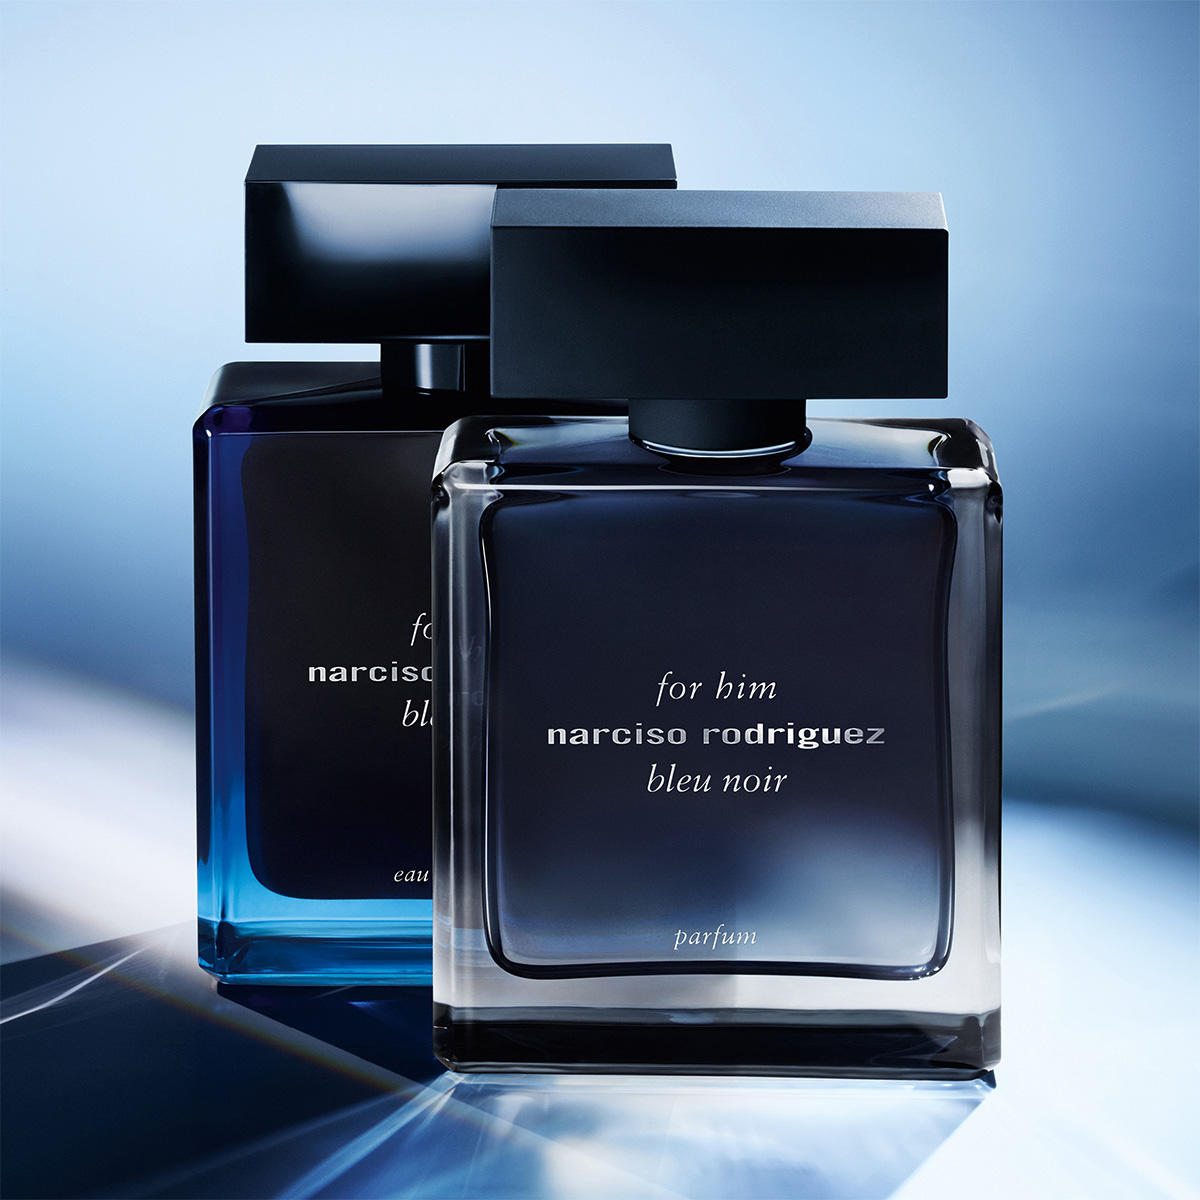 Narciso Rodriguez for him bleu noir Eau de Parfum 100 ml - 5